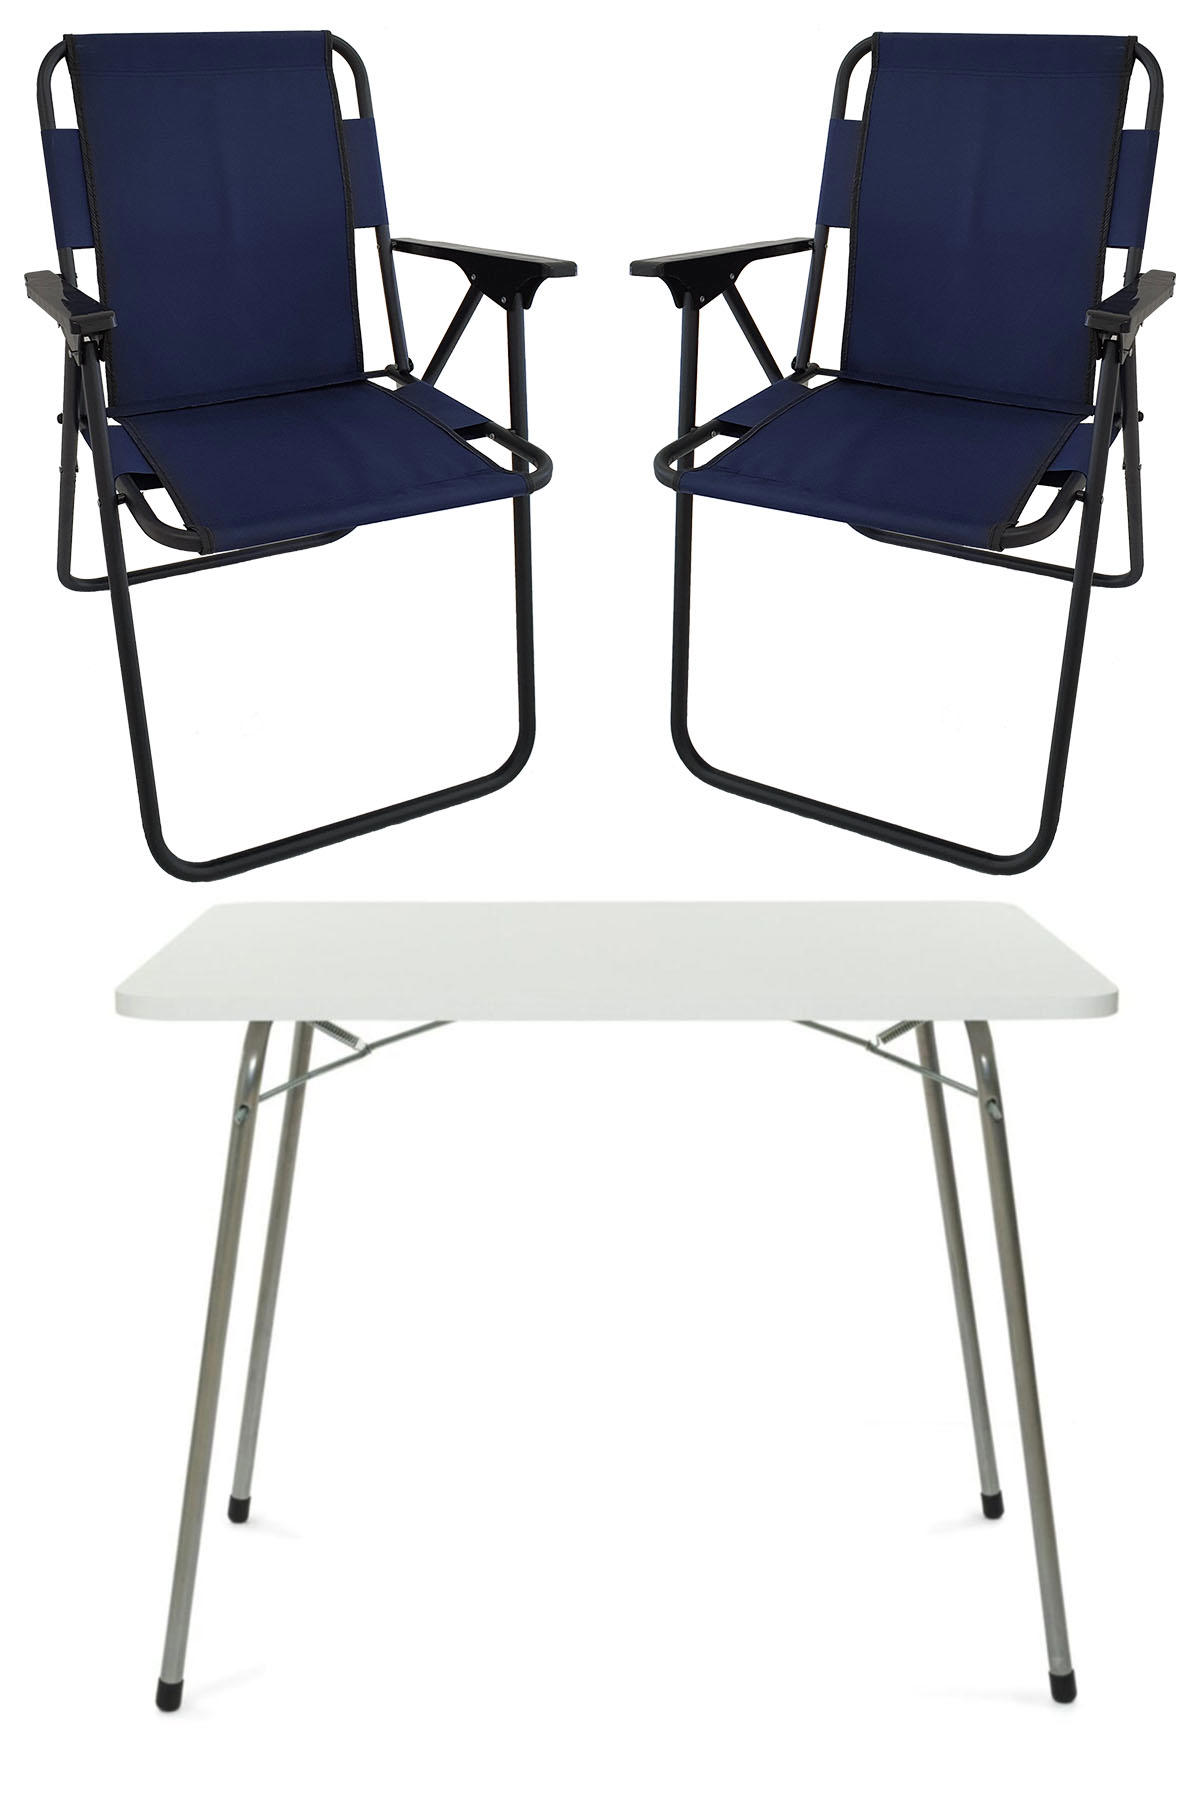 Bofigo 60 x 80 cm Tabureli Çantalı Dikdörtgen Granit Katlanır Kamp Masası Beyaz + 2 Adet Katlanır Sandalye Lacivert